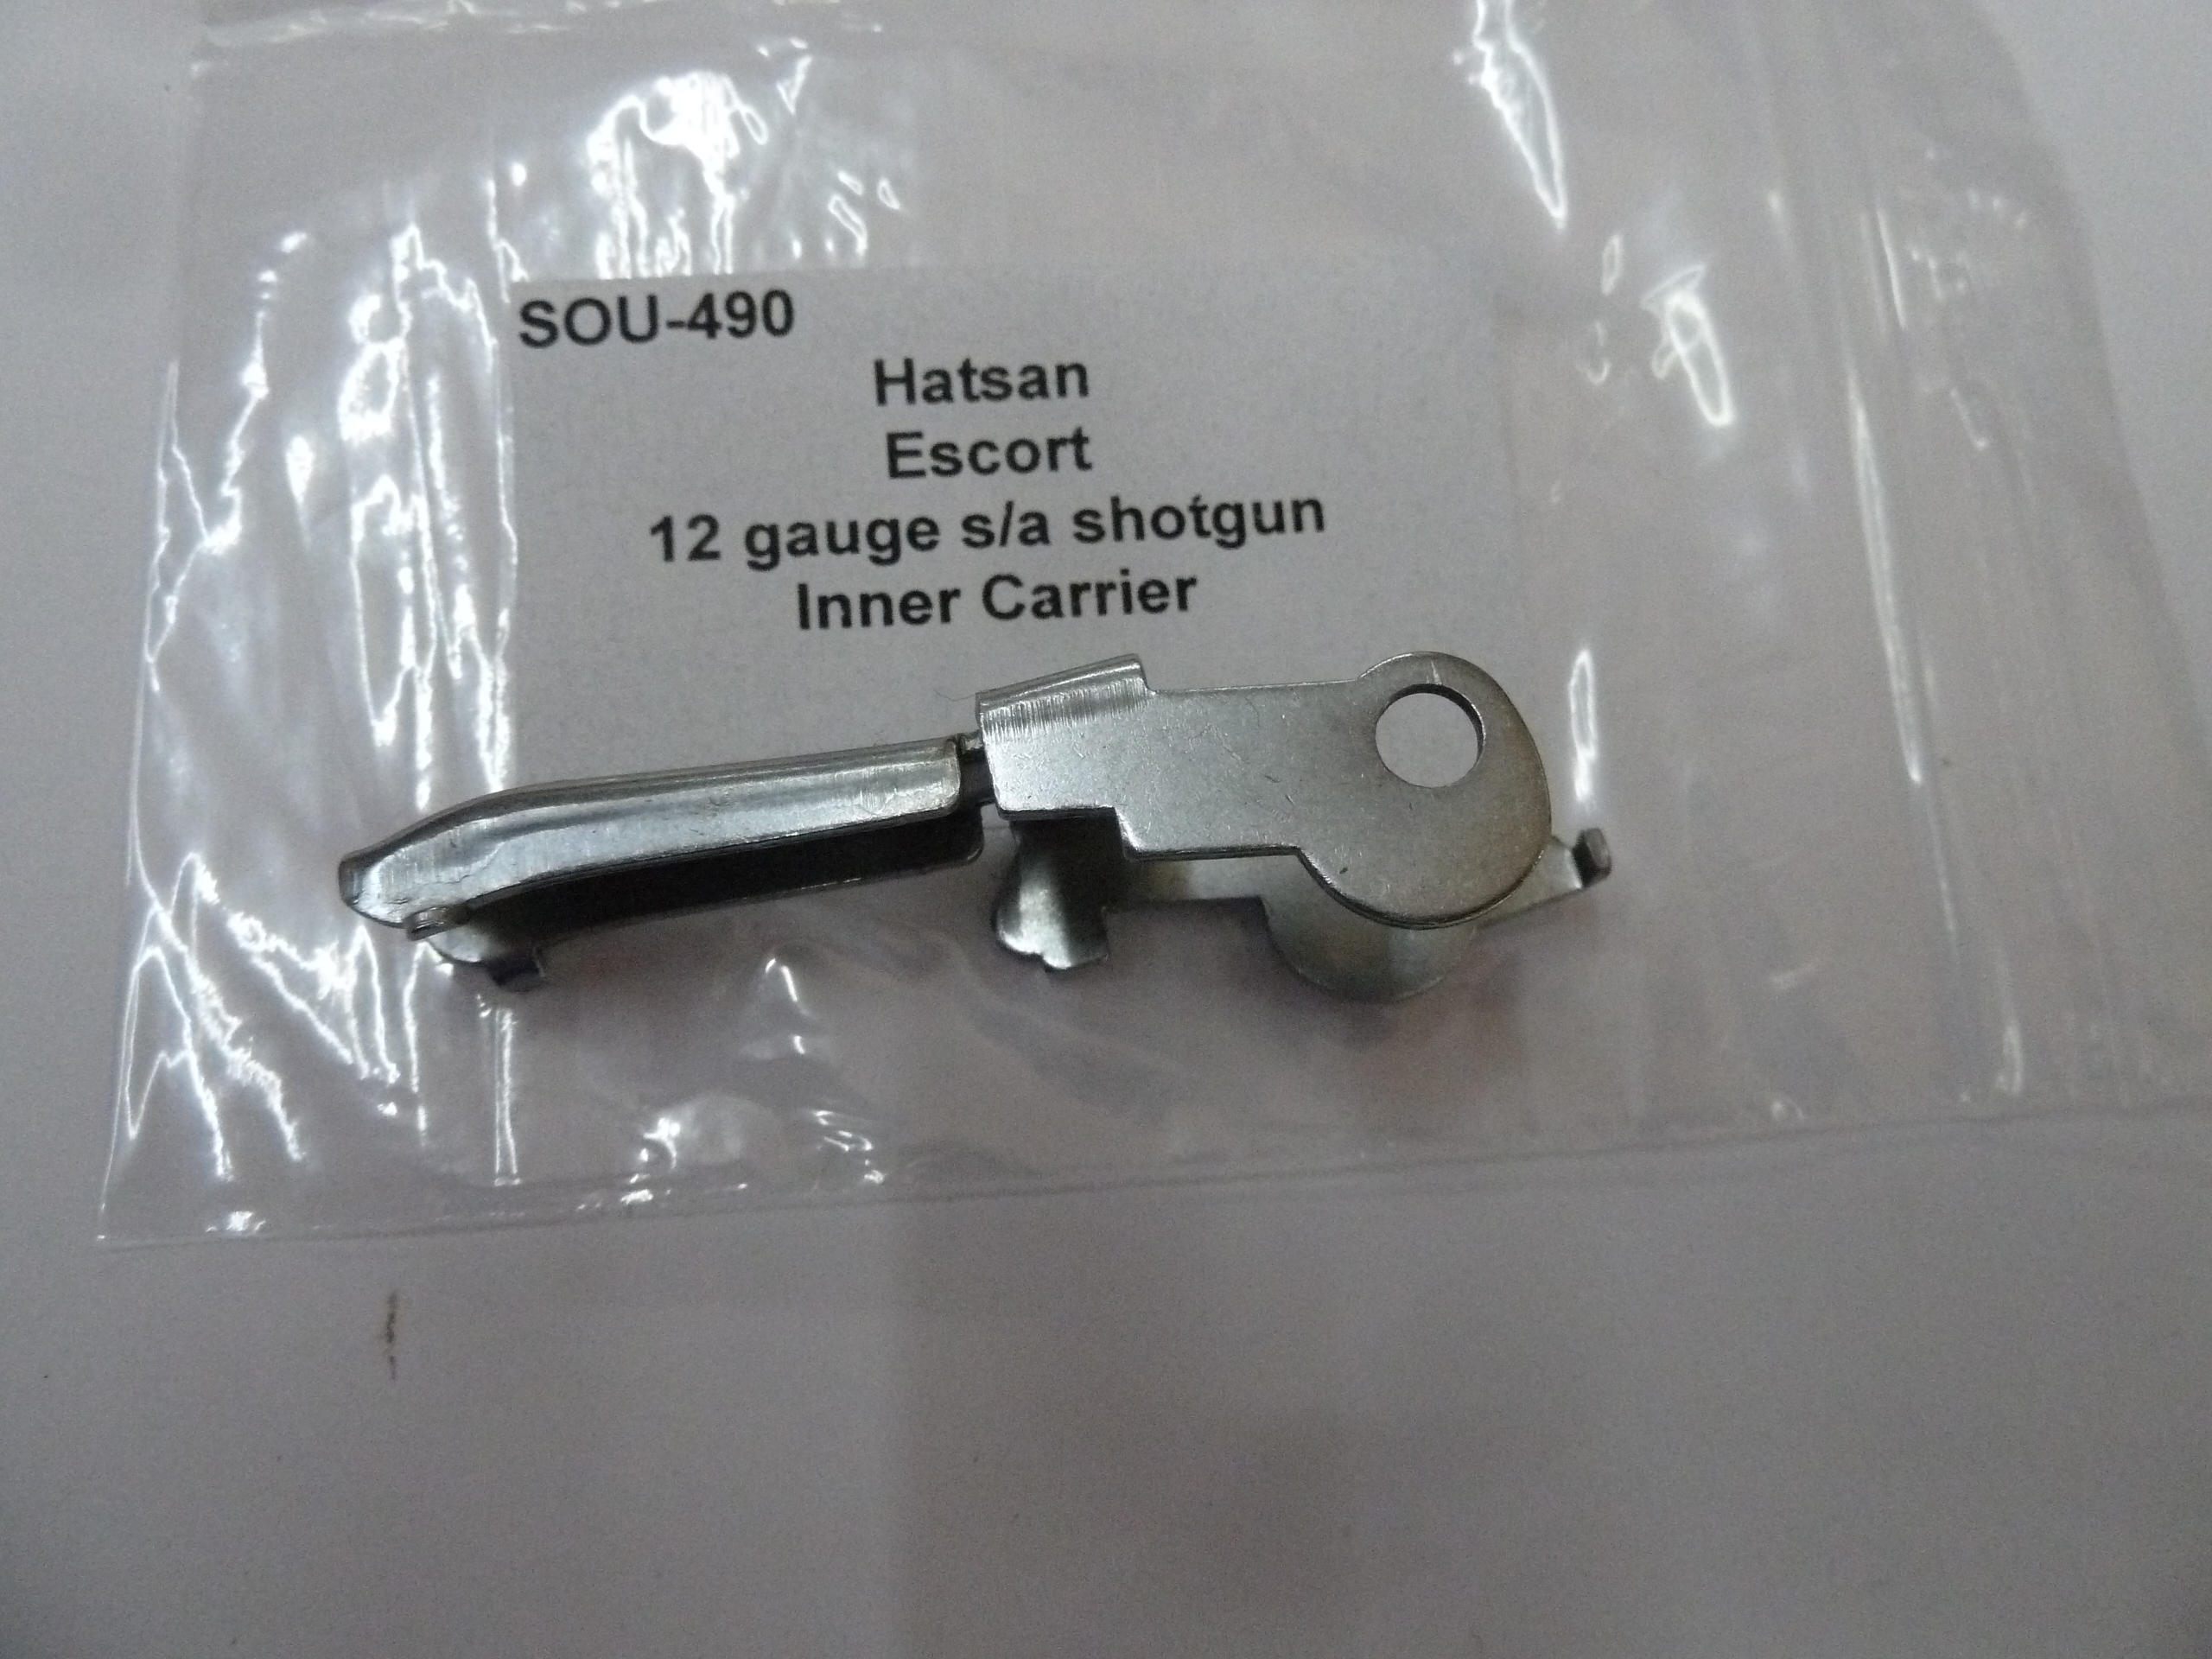 SOU-490 Harsan Escort 12 gauge sa shotgun inner carrier (3)